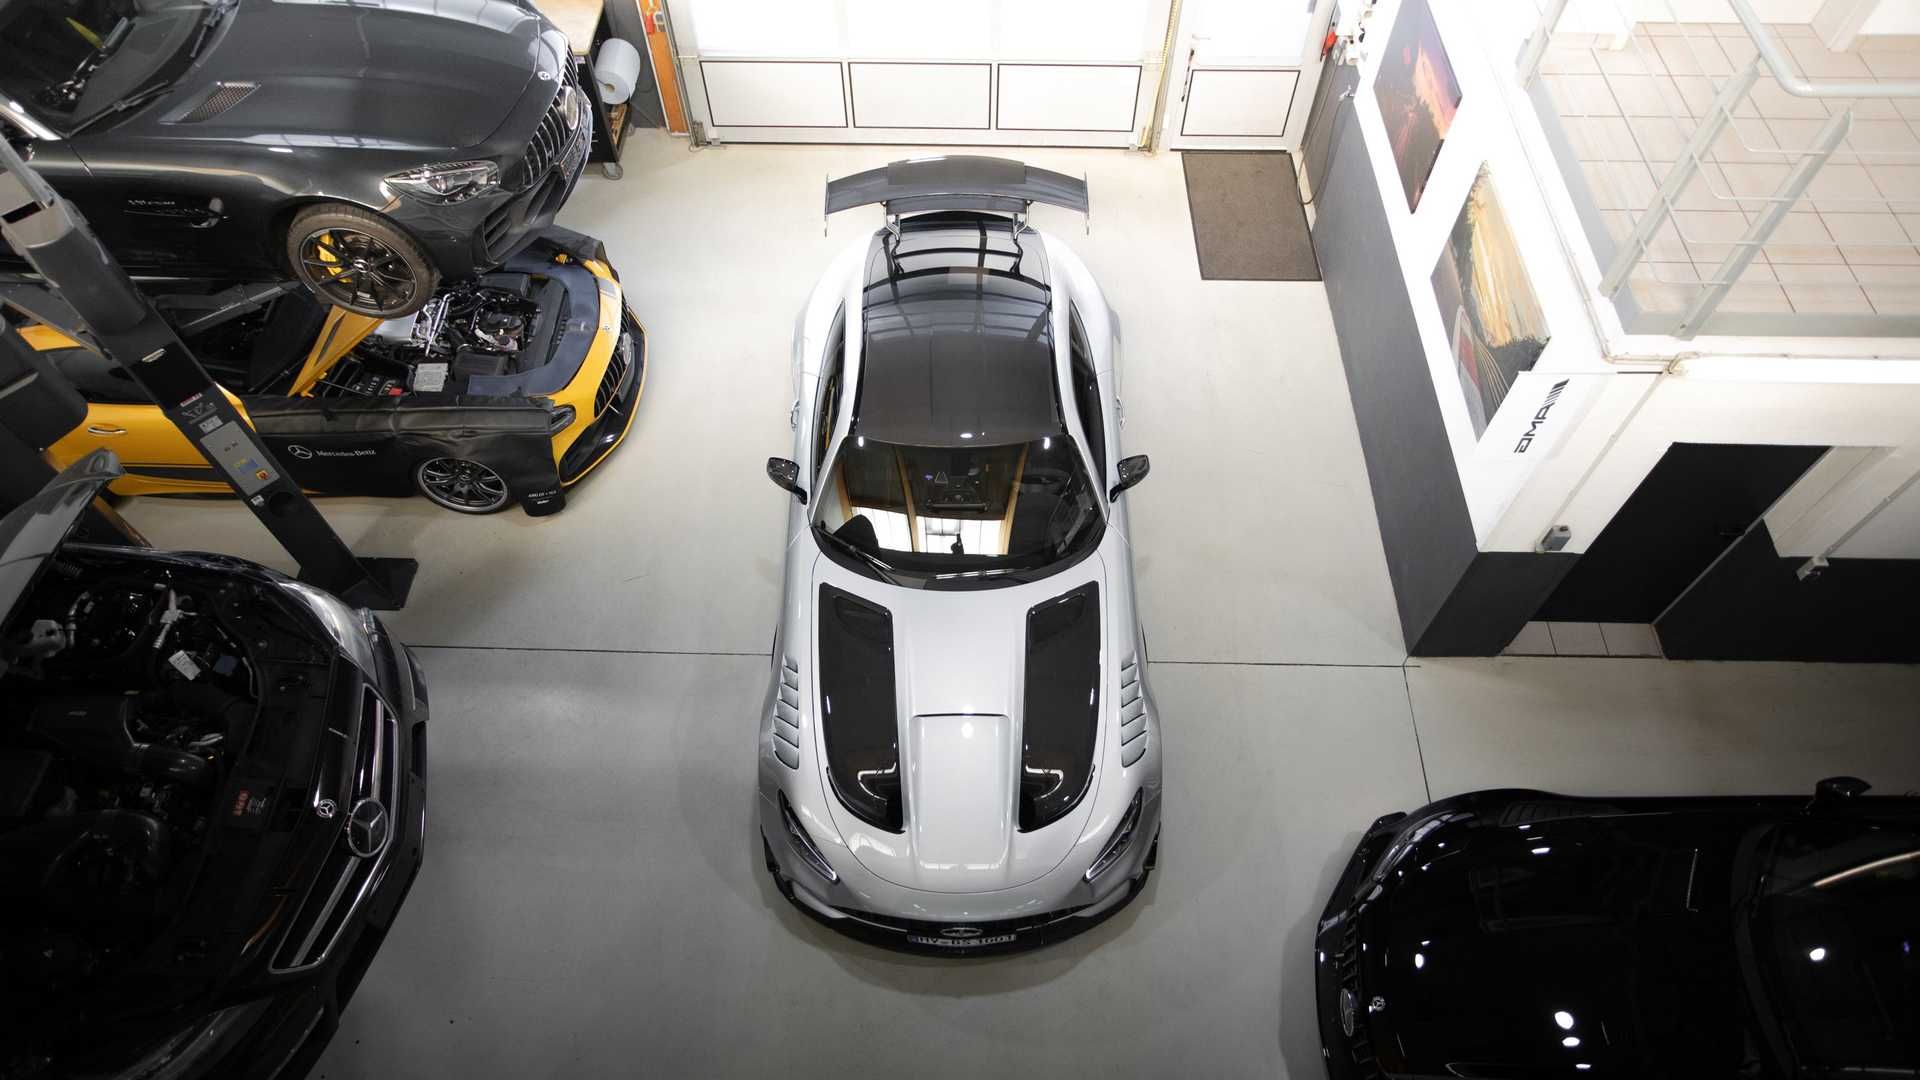 مرسدس ای ام جی سری بلک / Mercedes-AMG GT Black Series نقره ای رنگ در پارکینگ